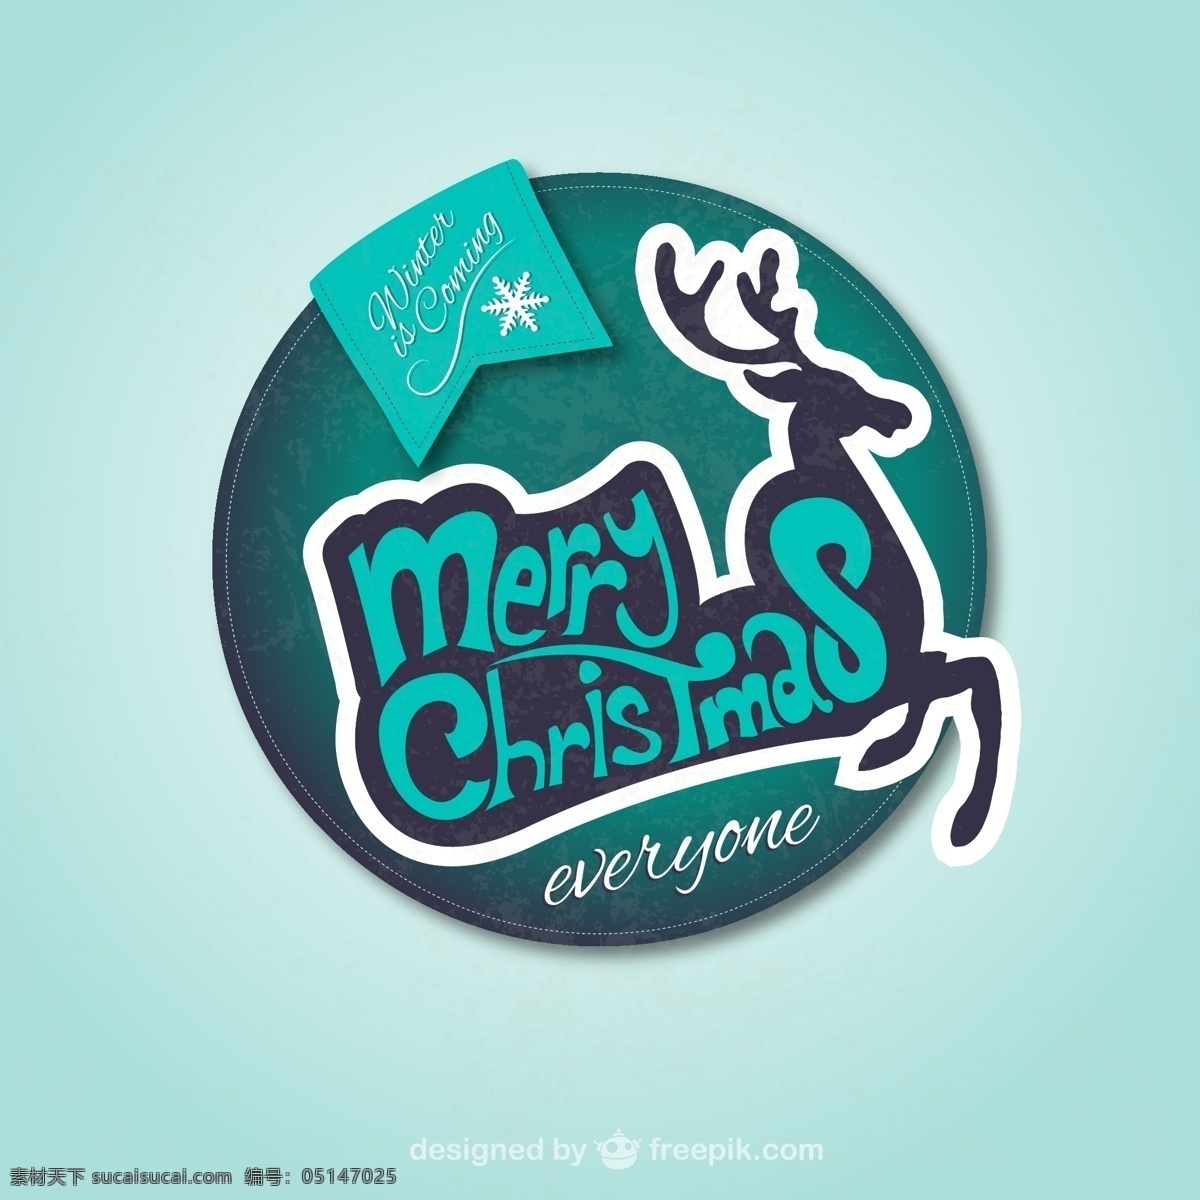 圣诞驯鹿标签 圆形 圣诞 驯鹿 标签 矢量 雪花 冷色 色调 蓝 绿 白 黑 圣诞专辑 招贴设计 青色 天蓝色